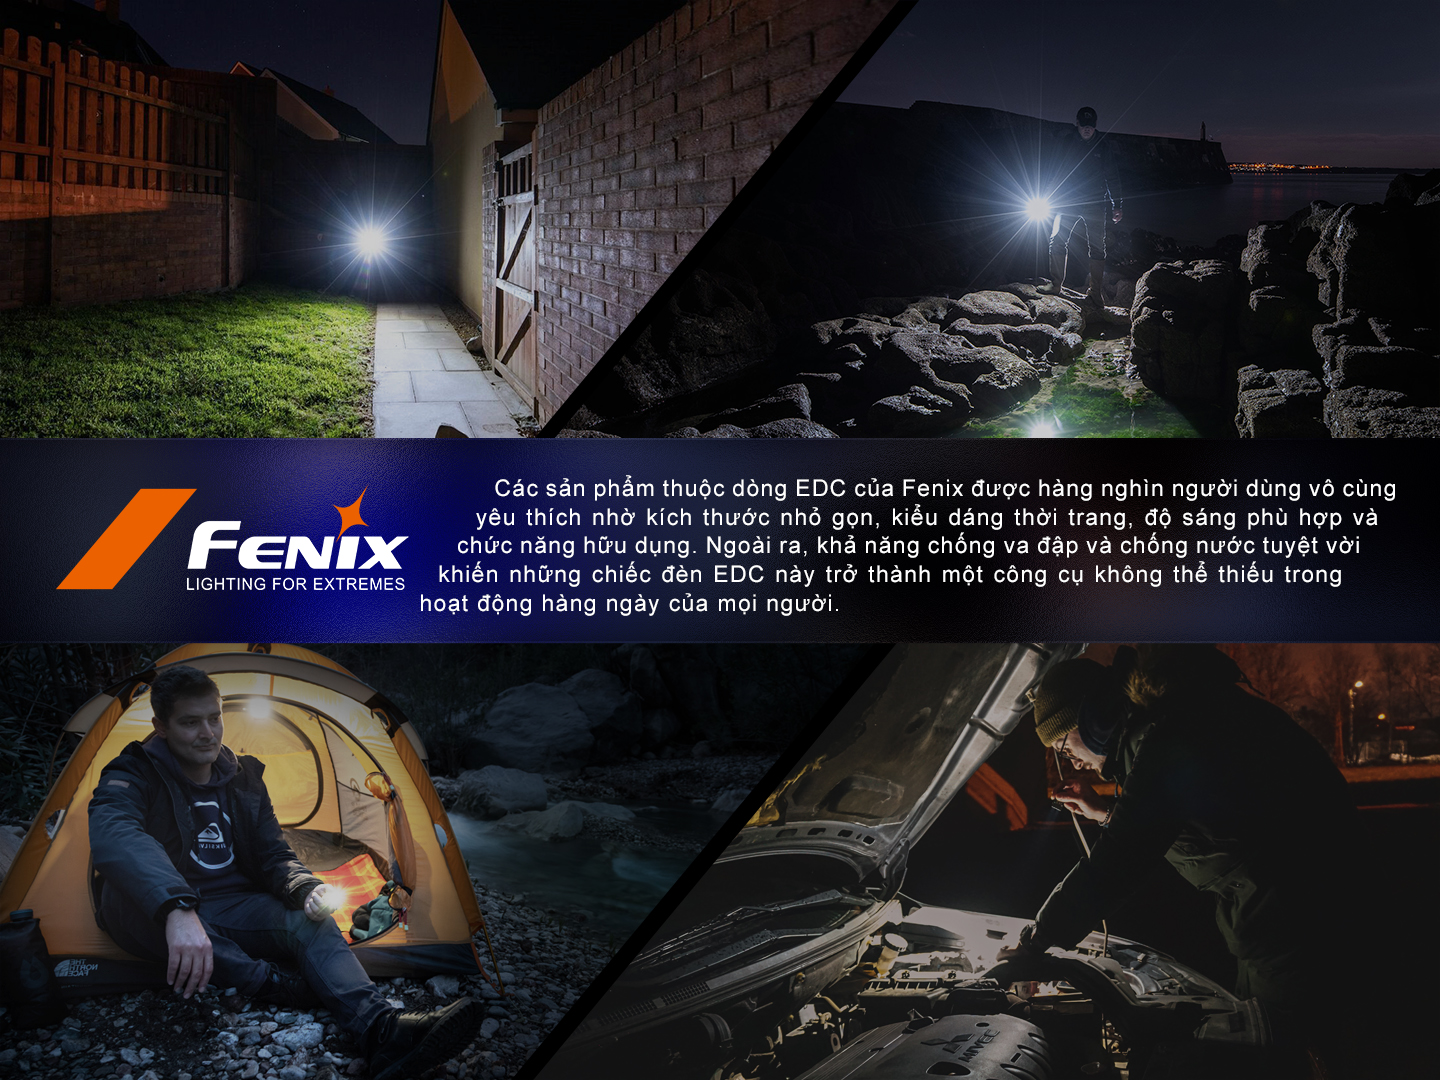 Sản phẩm thuộc dòng EDC của Fenix được hàng nghìn người vô cùng yêu thích